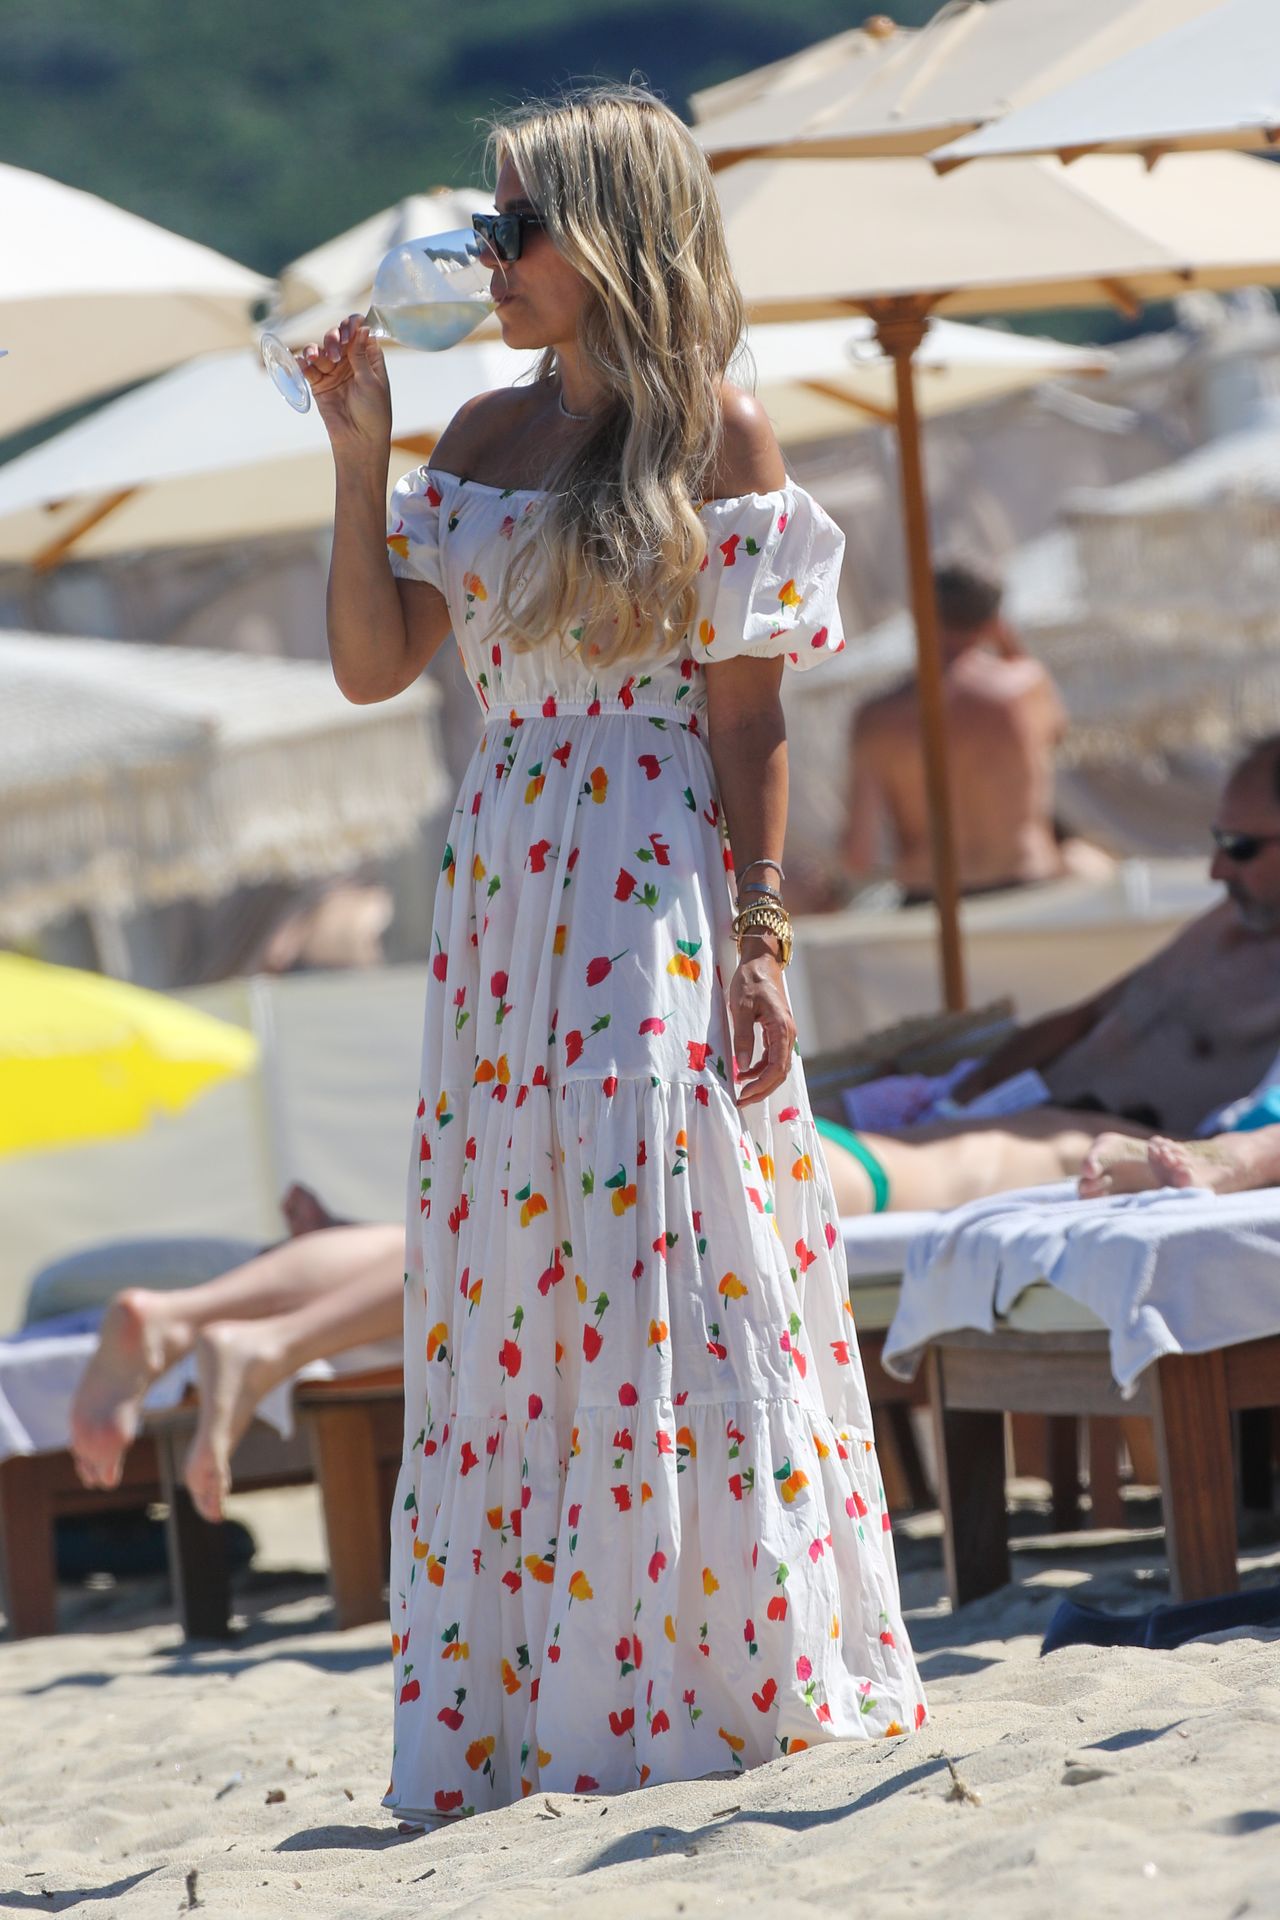 Sylvie Meis & Niclas Castello Enjoy a Day on the Beach in Saint Tropez (42 Photos)